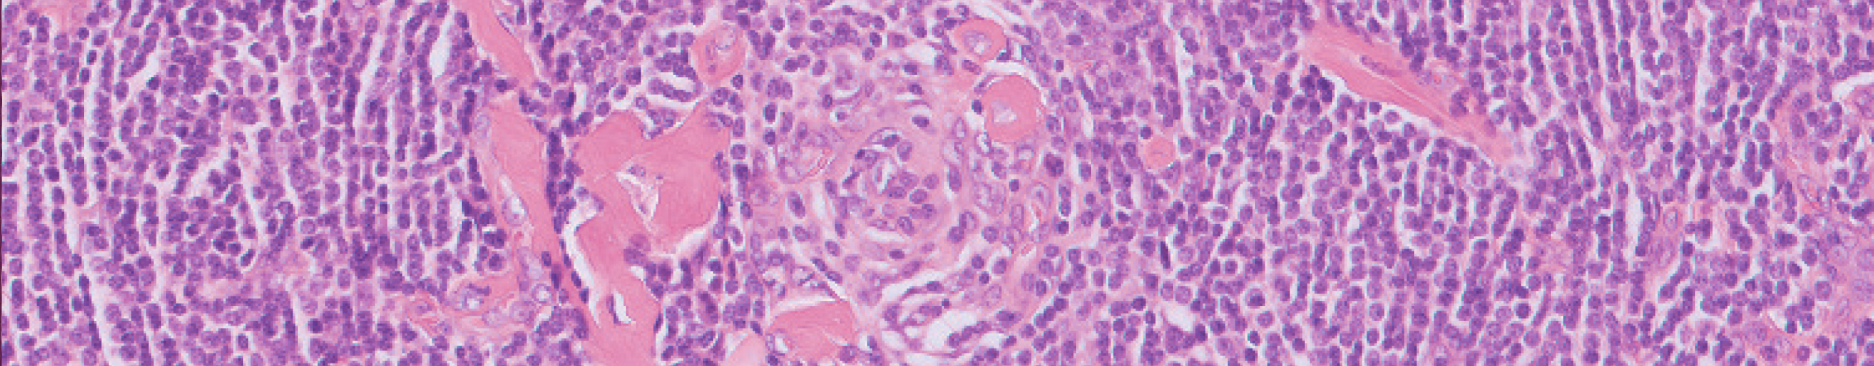 Pathology image